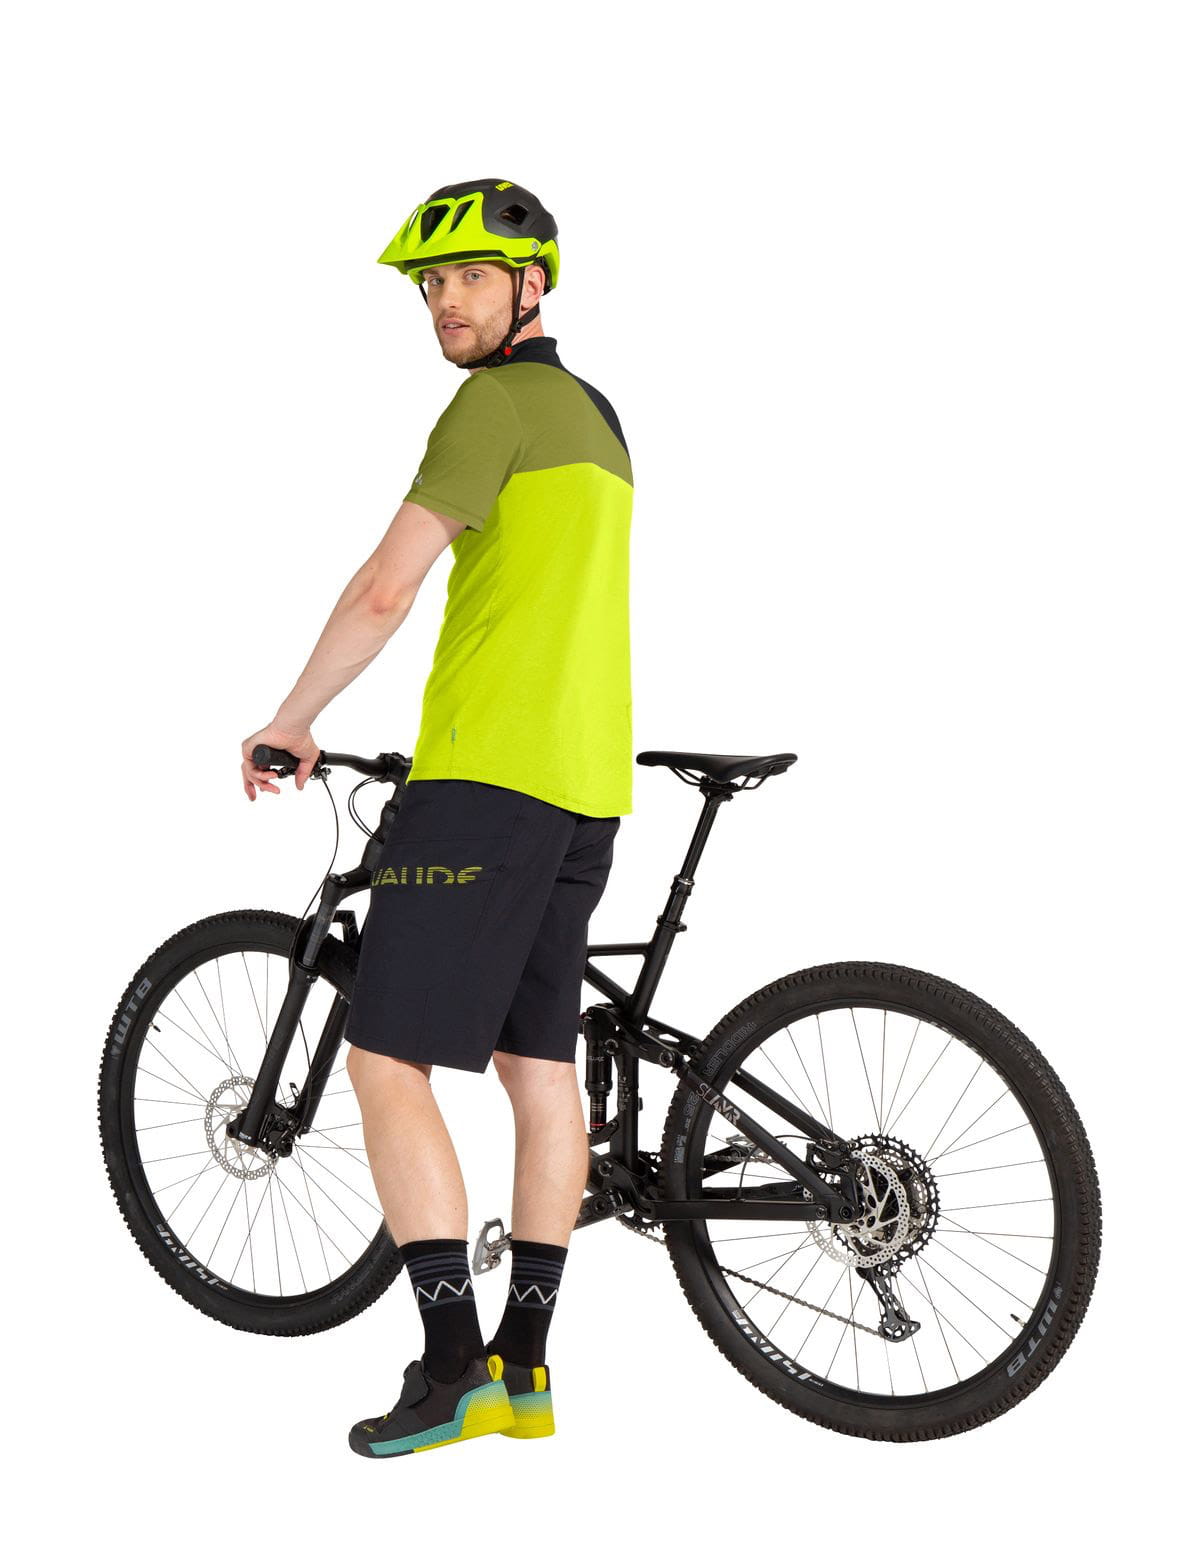 Innenhose Altissimo buy online Bike III Shorts with VAUDE Mens herausnehmbarer Shorts